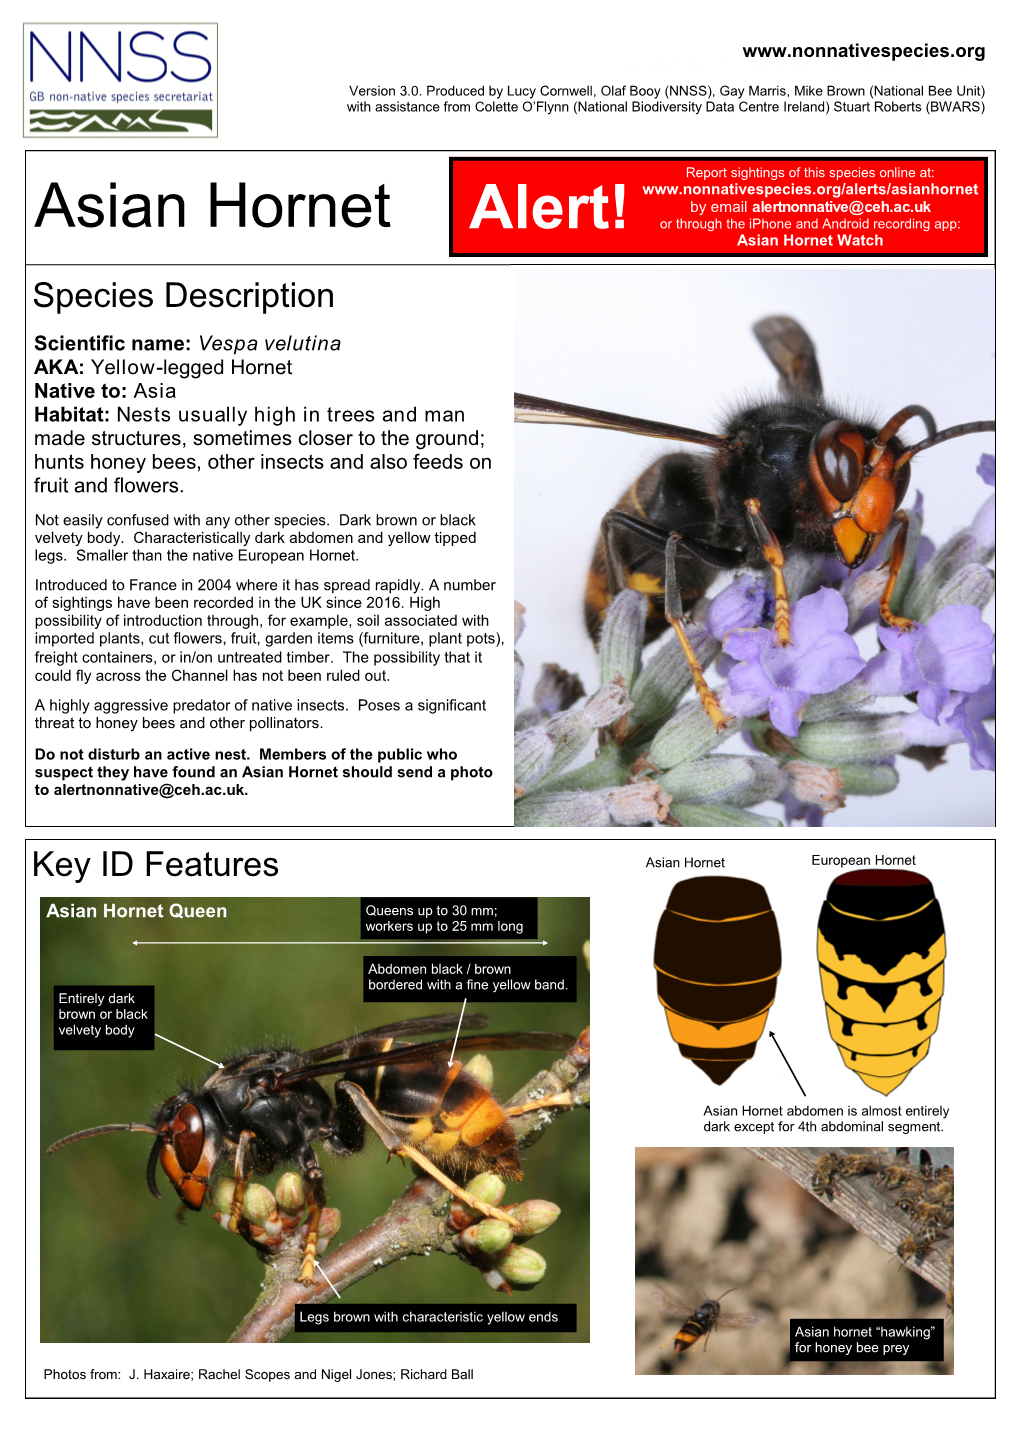 Asian Hornet Alert!